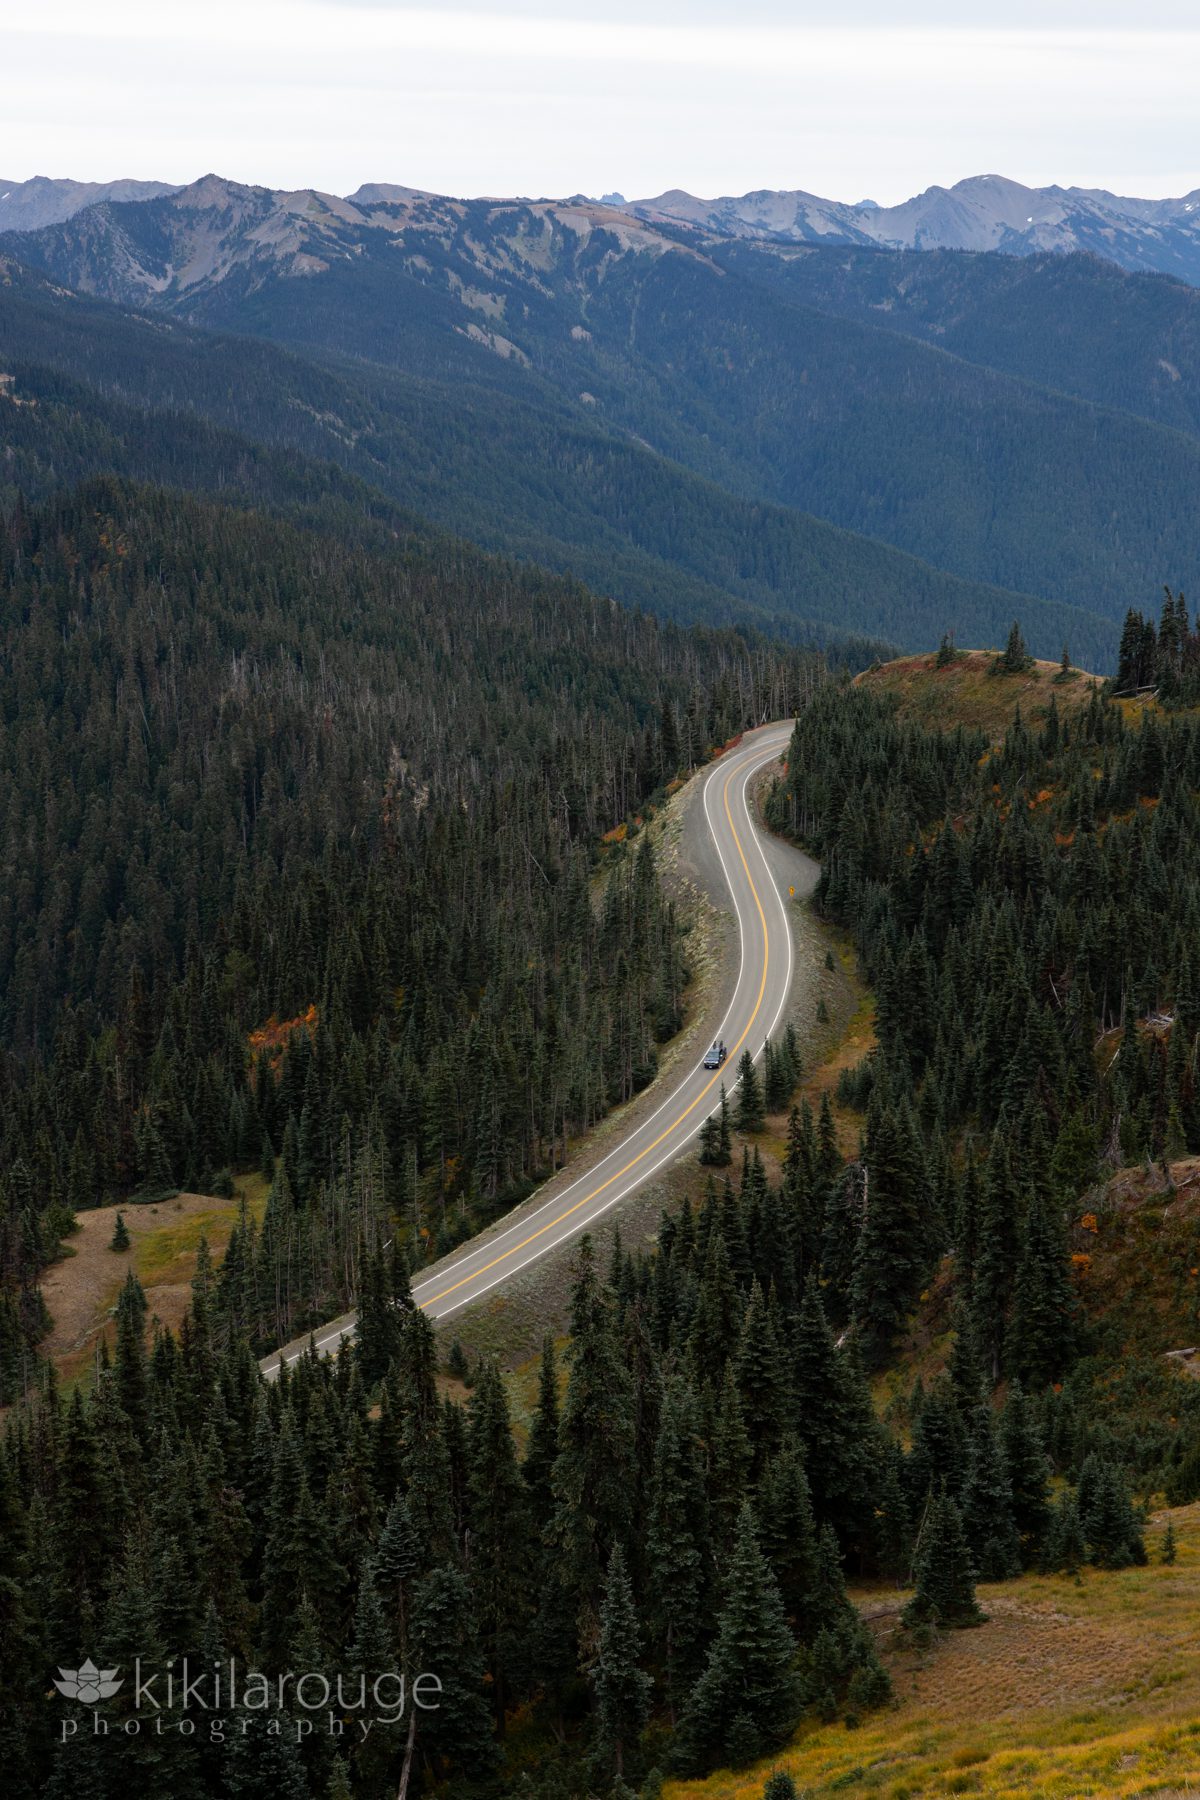 Winding road coming down mountain pass in WA